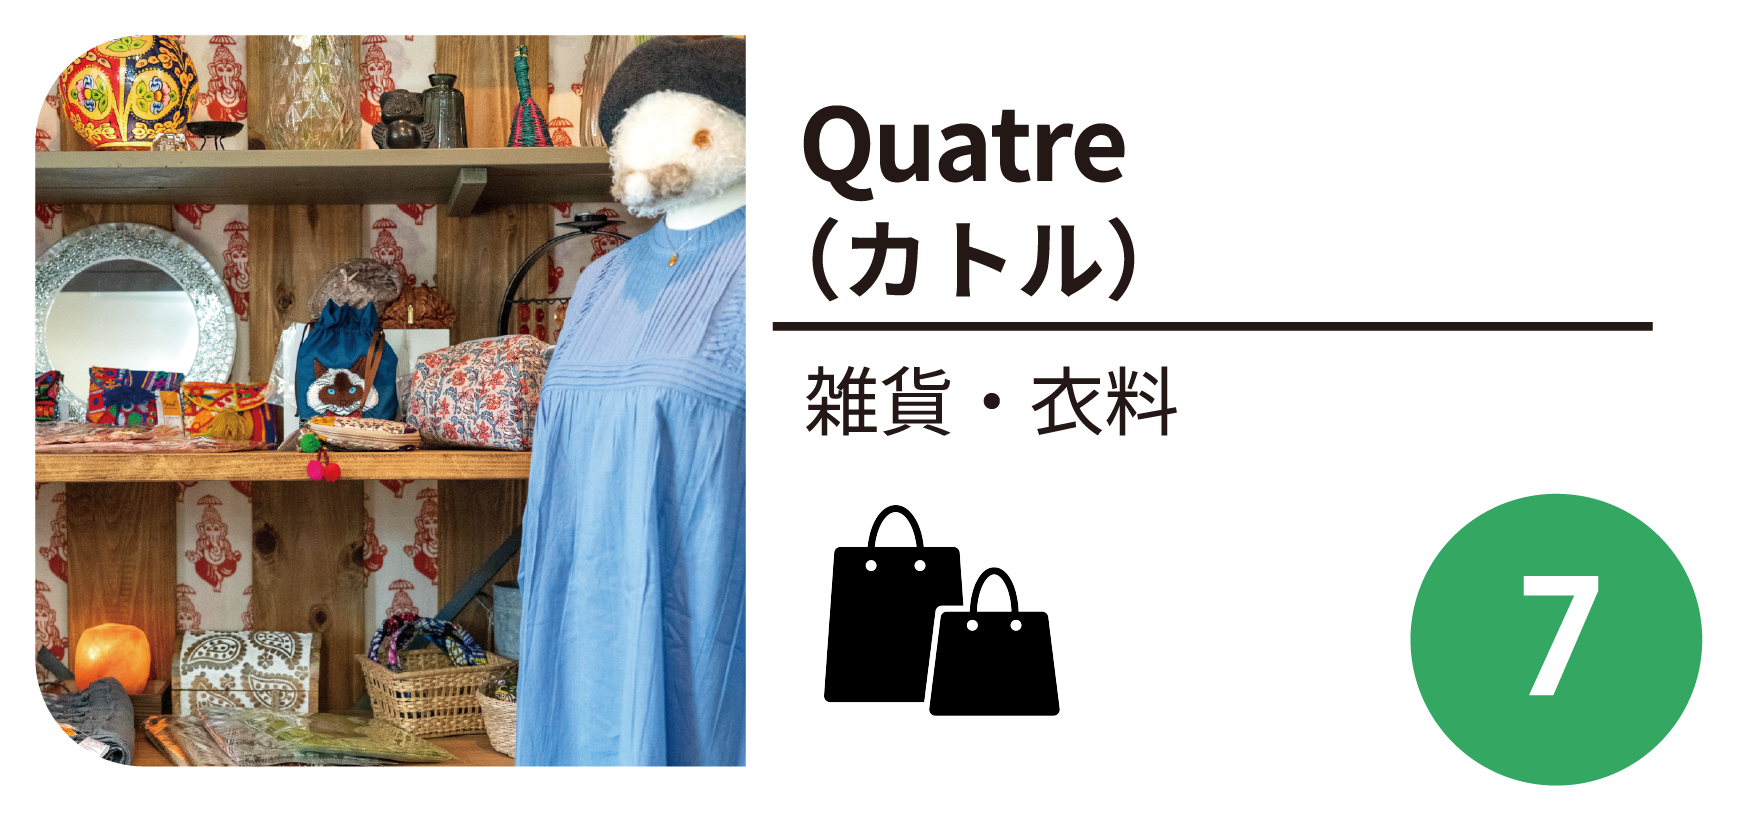 Quarte（カトル）